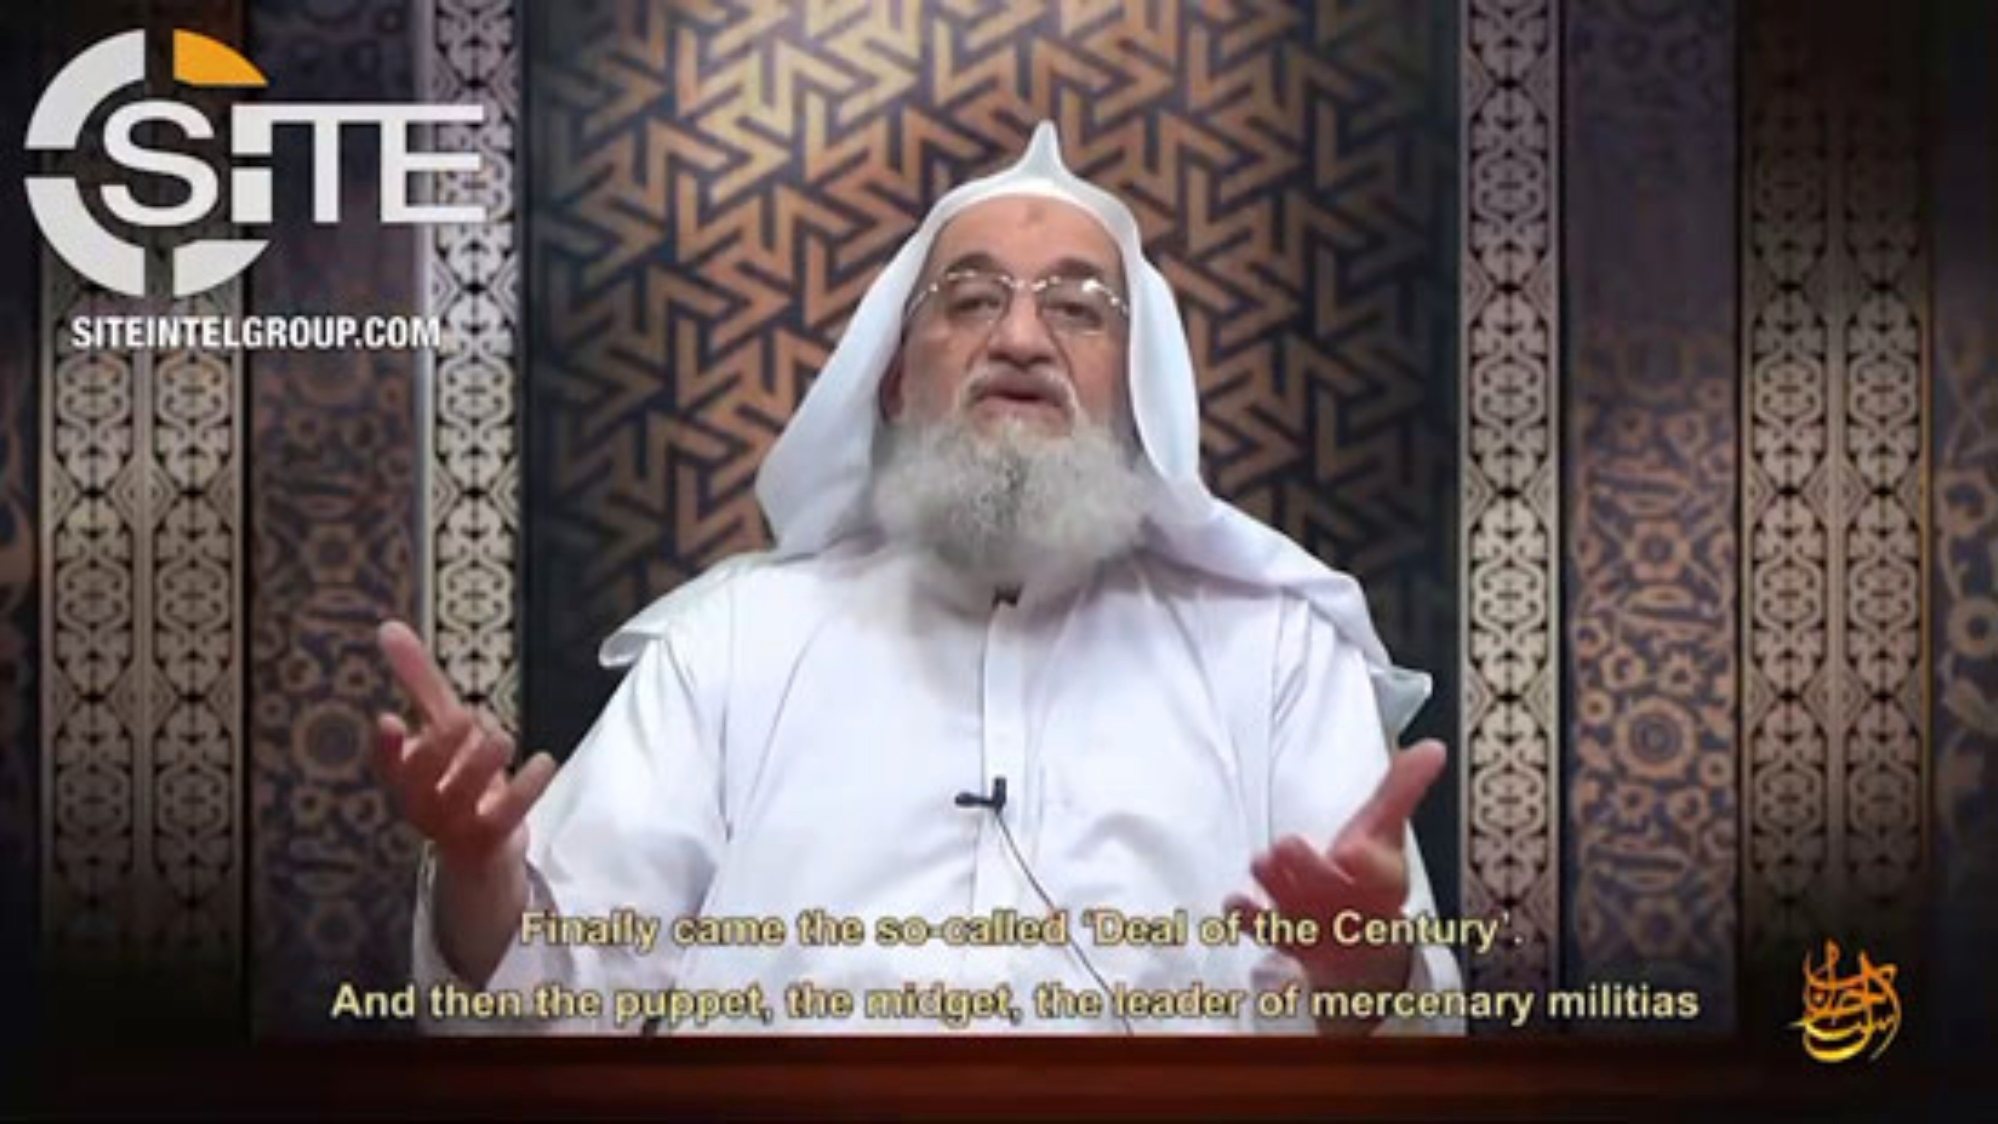 Vídeo com discurso de Ayman al-Zawahri, com o título “Jerusalém nunca será judaizada”, tem 61 minutos e 37 segundos